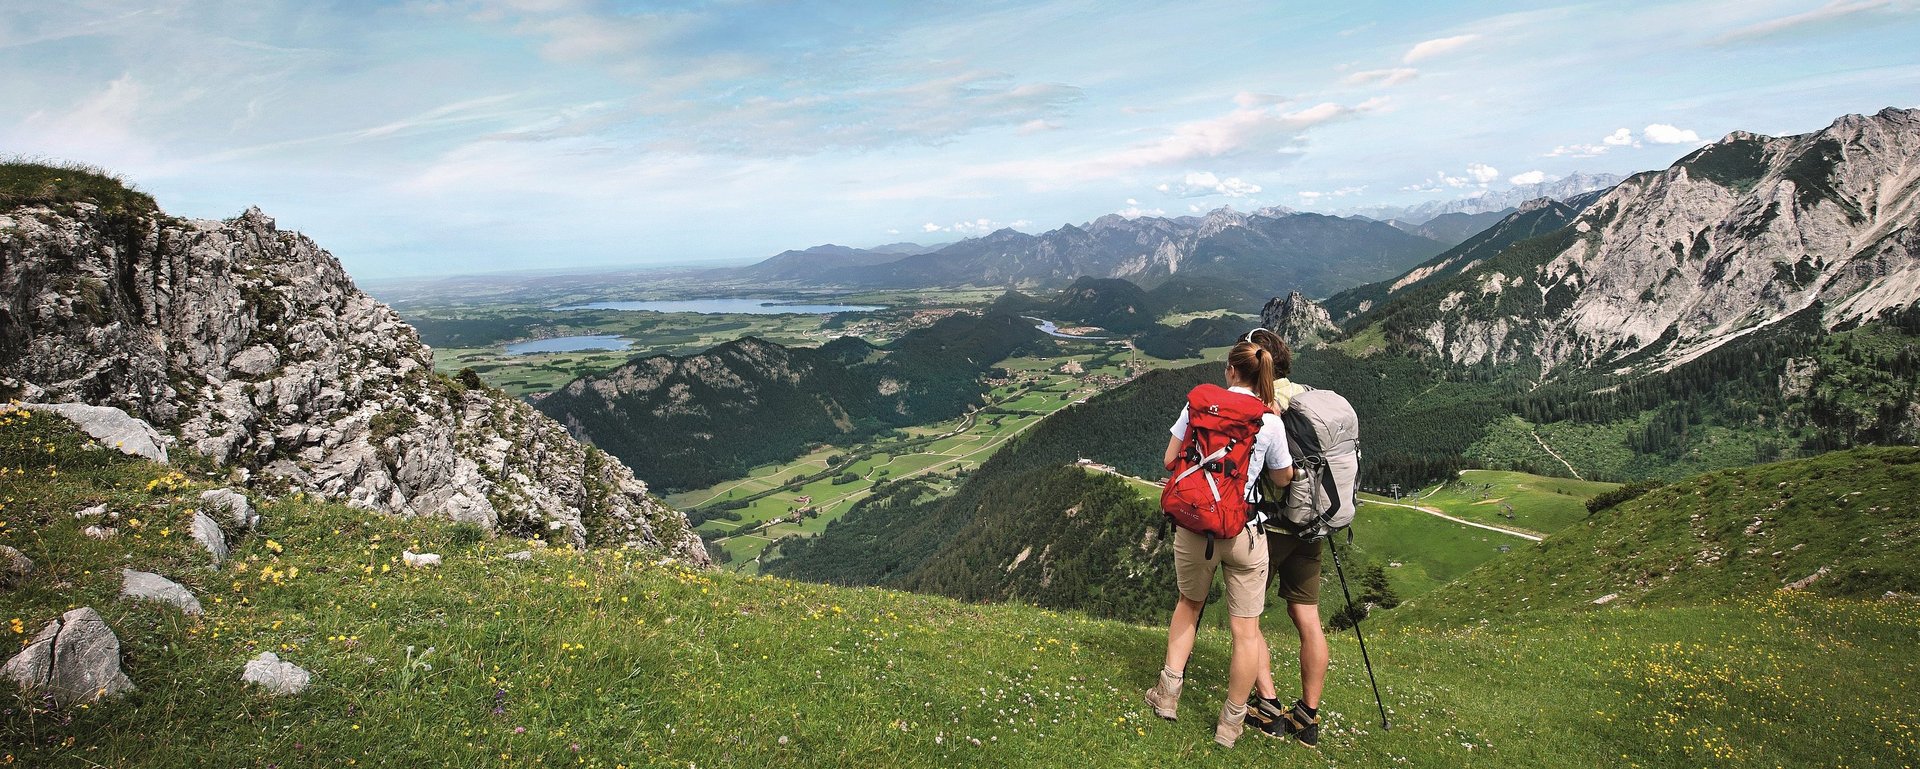 Paar beim Wandern in den Allgäuer Alpen mit Panoramablick